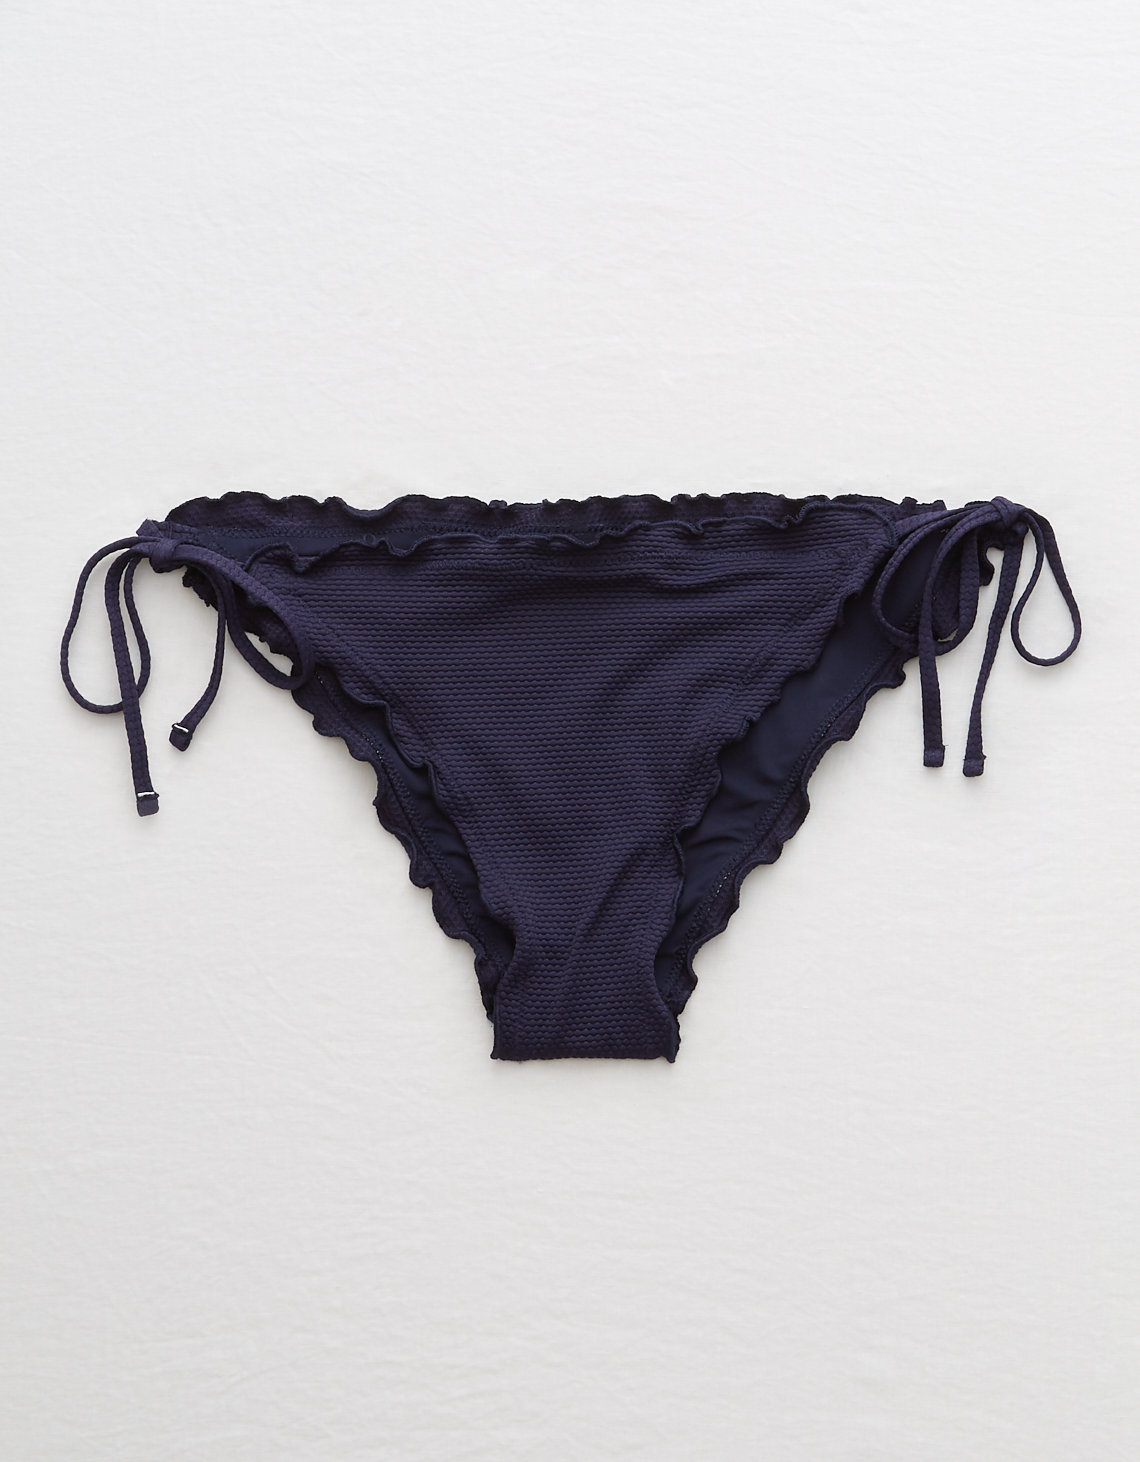 miami hurricanes bikini underwear